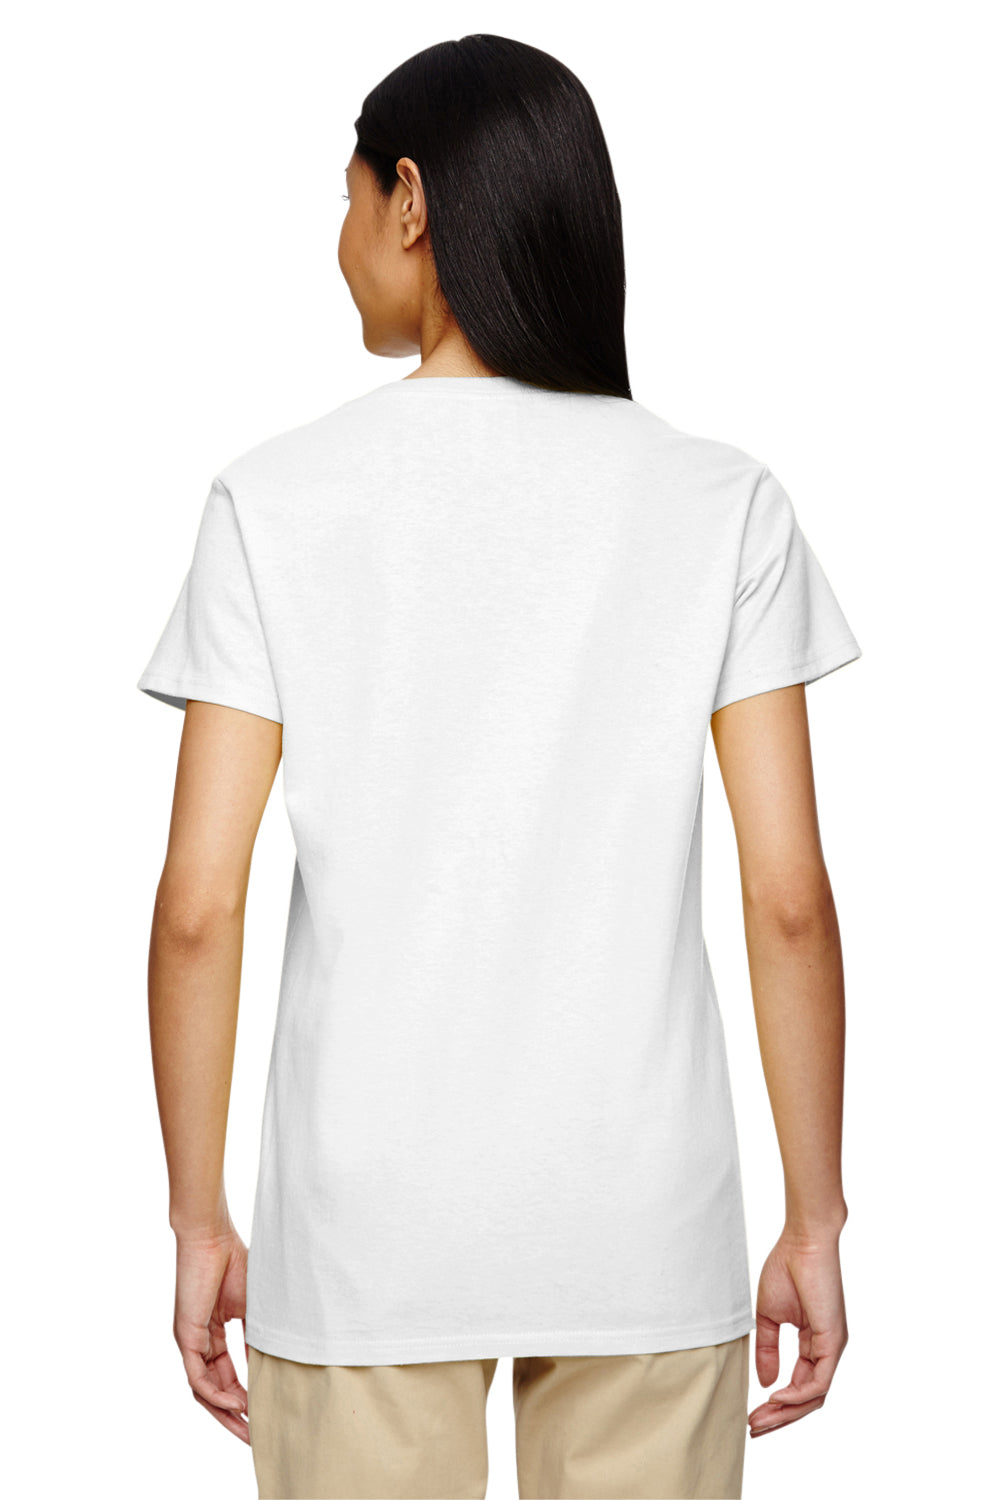 Gildan G500VL Womens Short Sleeve V-Neck T-Shirt White Back